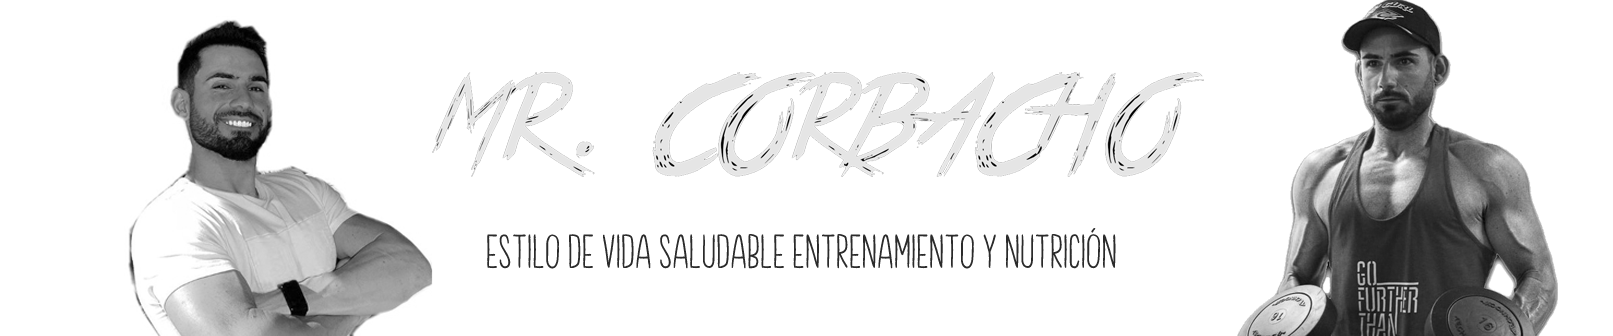 Mr Corbacho | NUTRICIÓN Y ENTRENAMIENTO